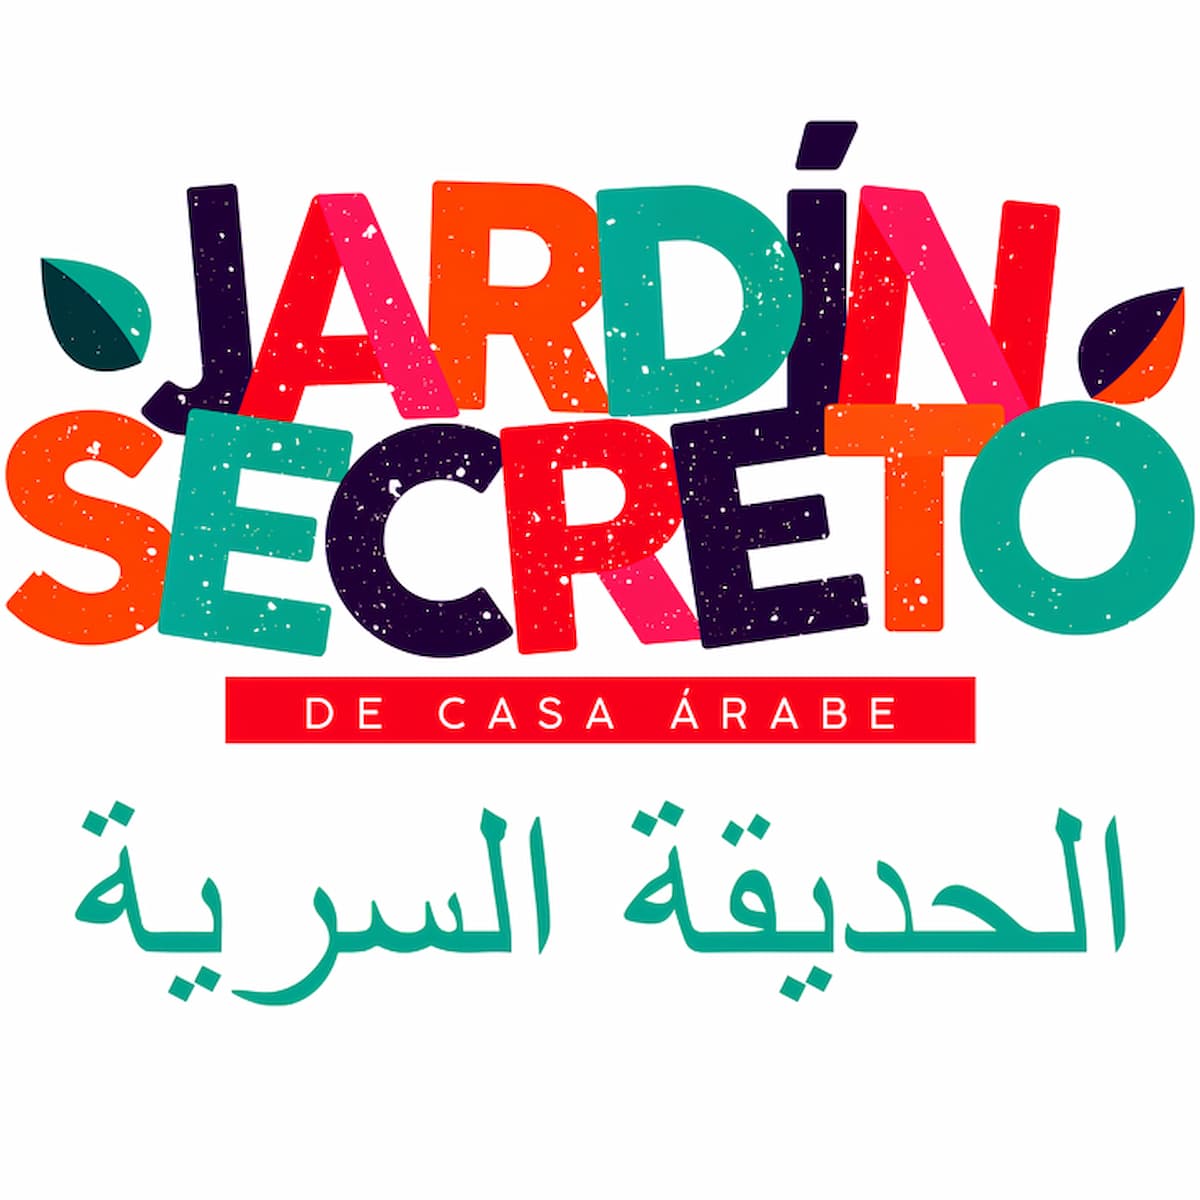 El Jardín Secreto de Casa Árabe, un verano de interculturalidad artística y gastronómica.